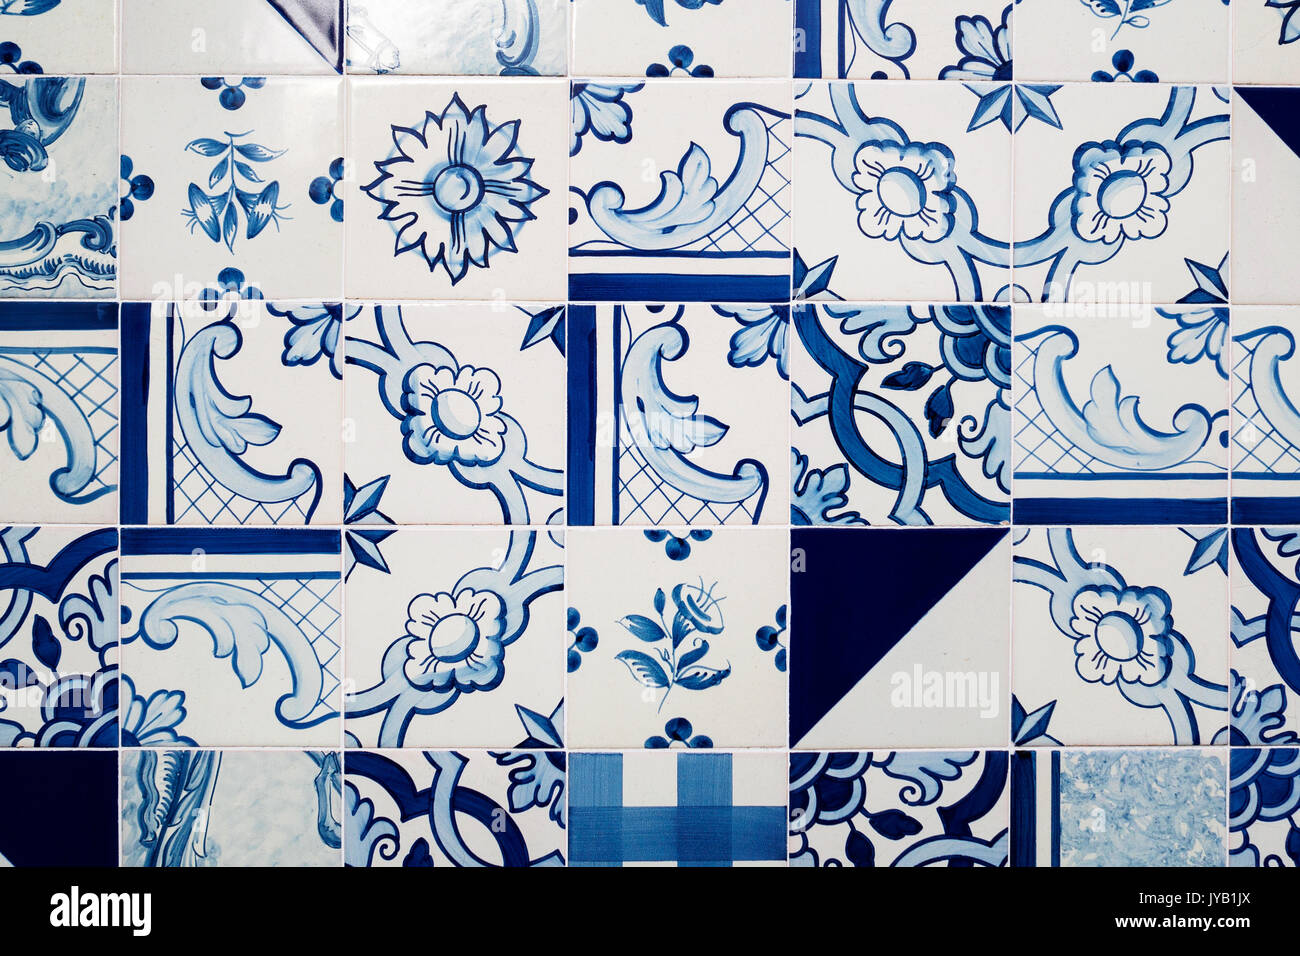 Carreaux bleu et blanc décoré avec des décors abstraits. Le format paysage. Banque D'Images